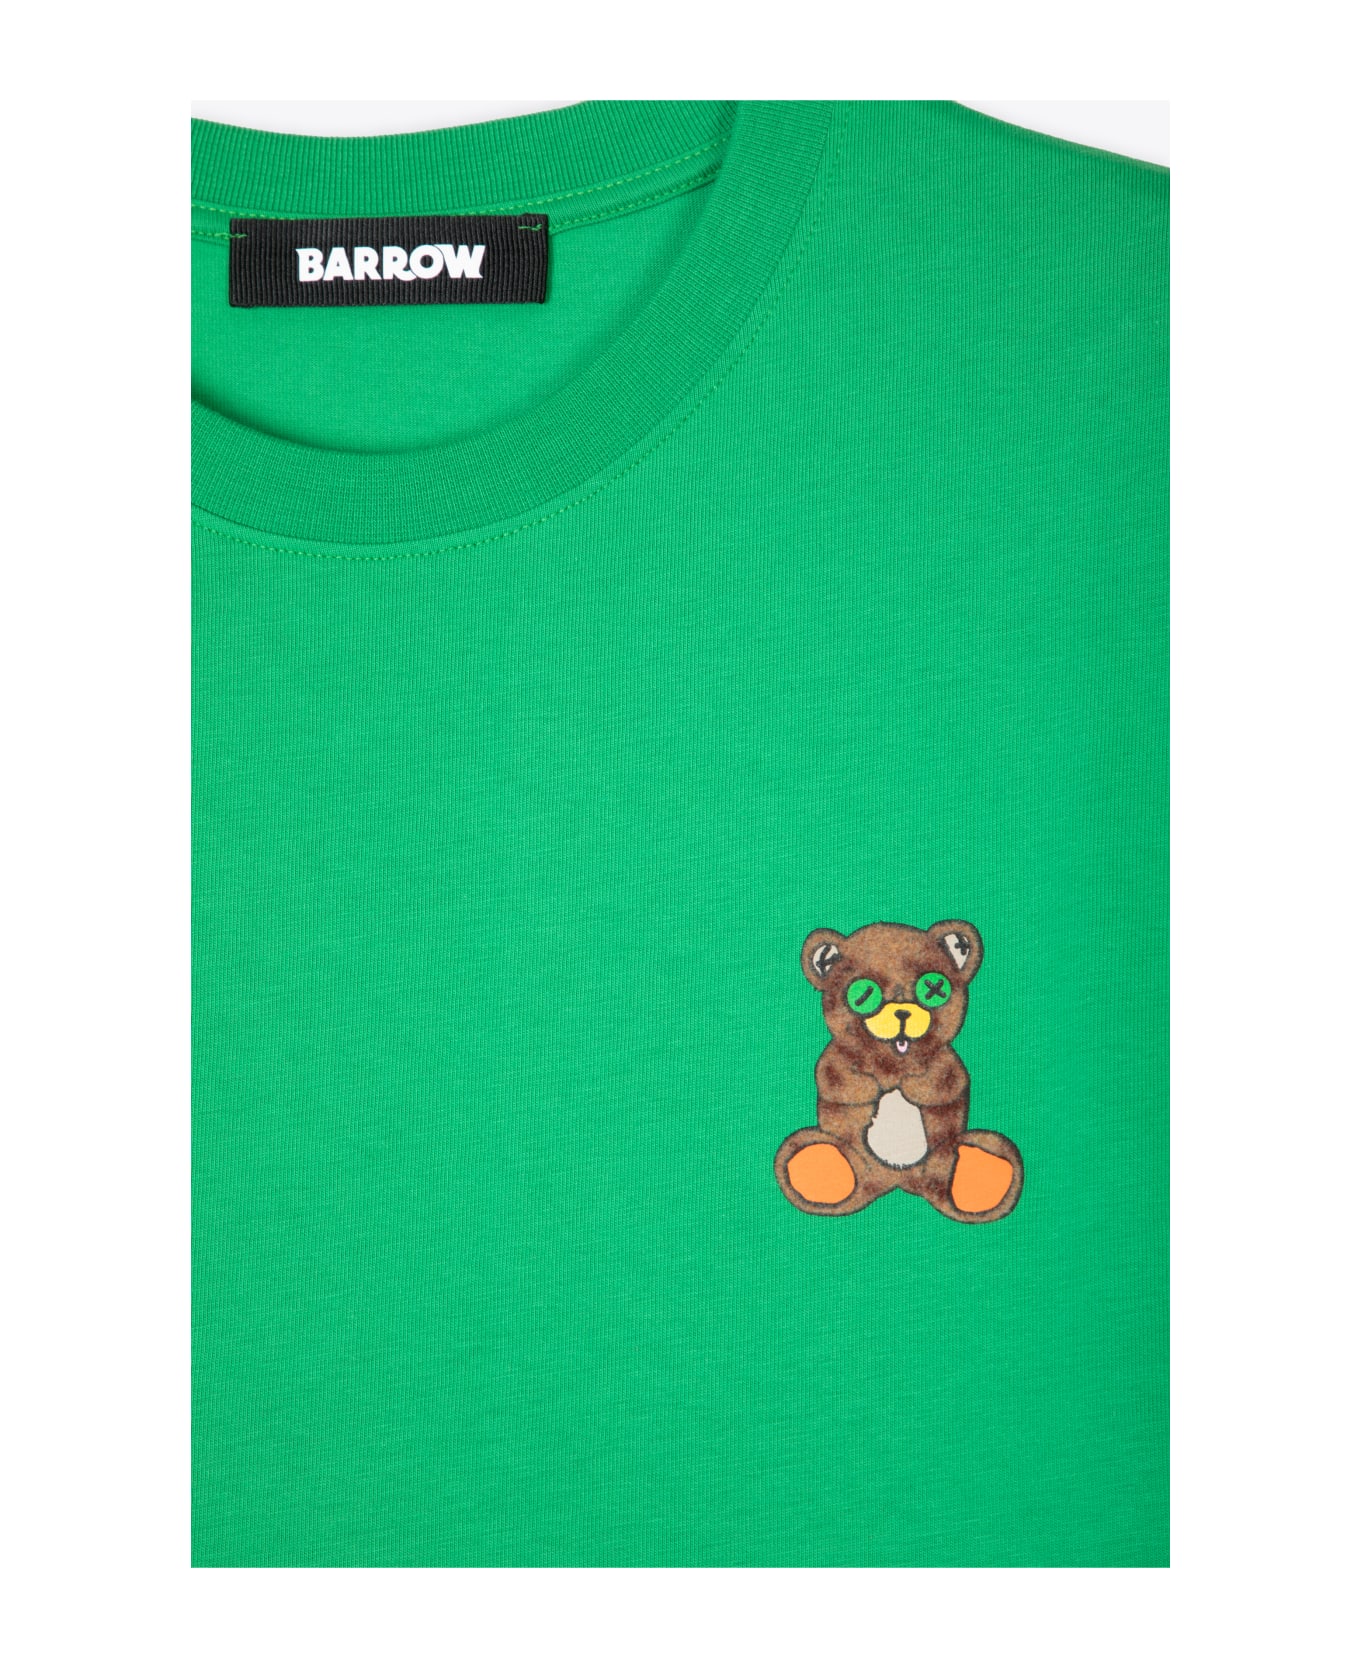 Barrow Jersey T-shirt Unisex Emerald Green T-shirt With Chest Teddy Bear Print - Green